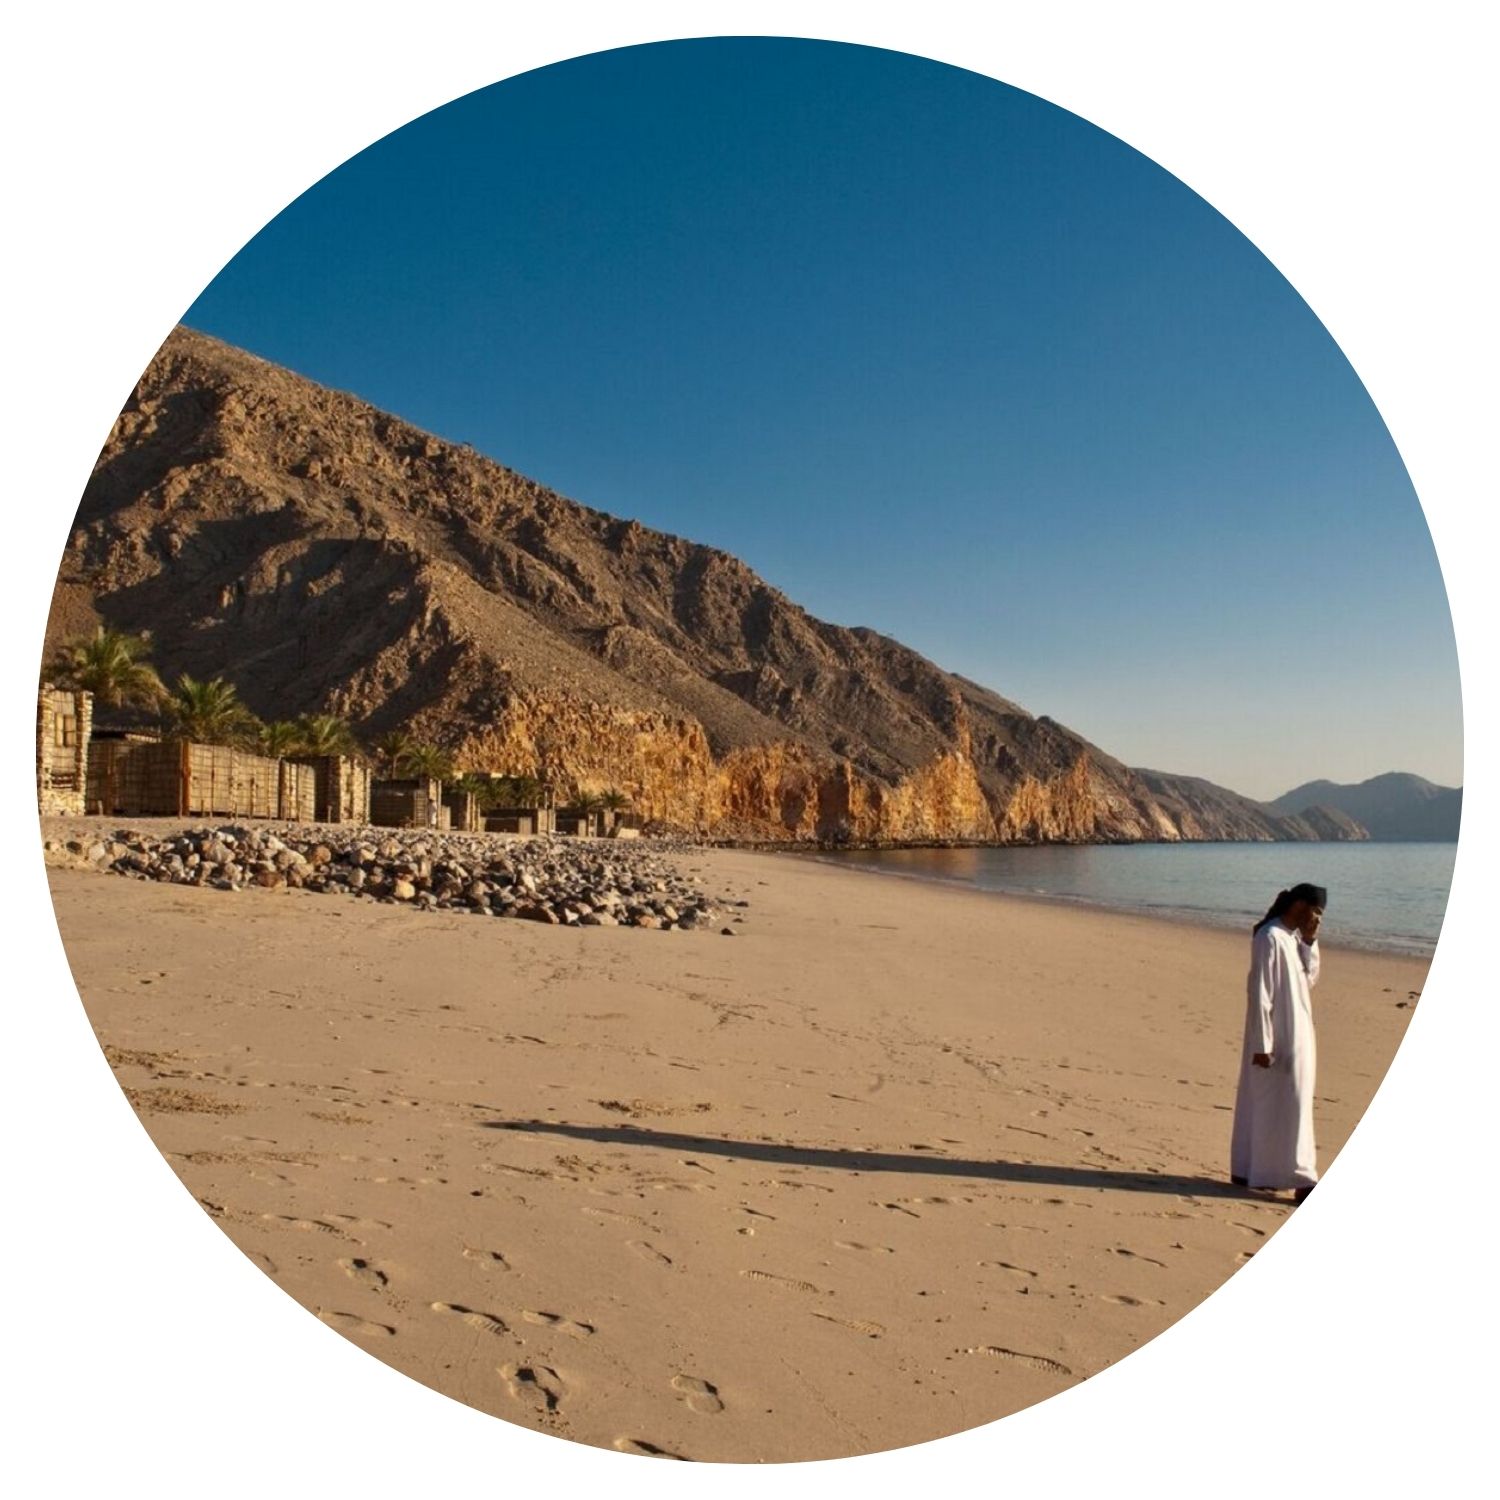 Un jeune homme, vêtu de la tenue traditionnelle omanaise, se tient debout sur une plage entourée de nature sauvage. La scène se déroule en Oman, offrant un aperçu authentique de la culture et des paysages naturels du pays.